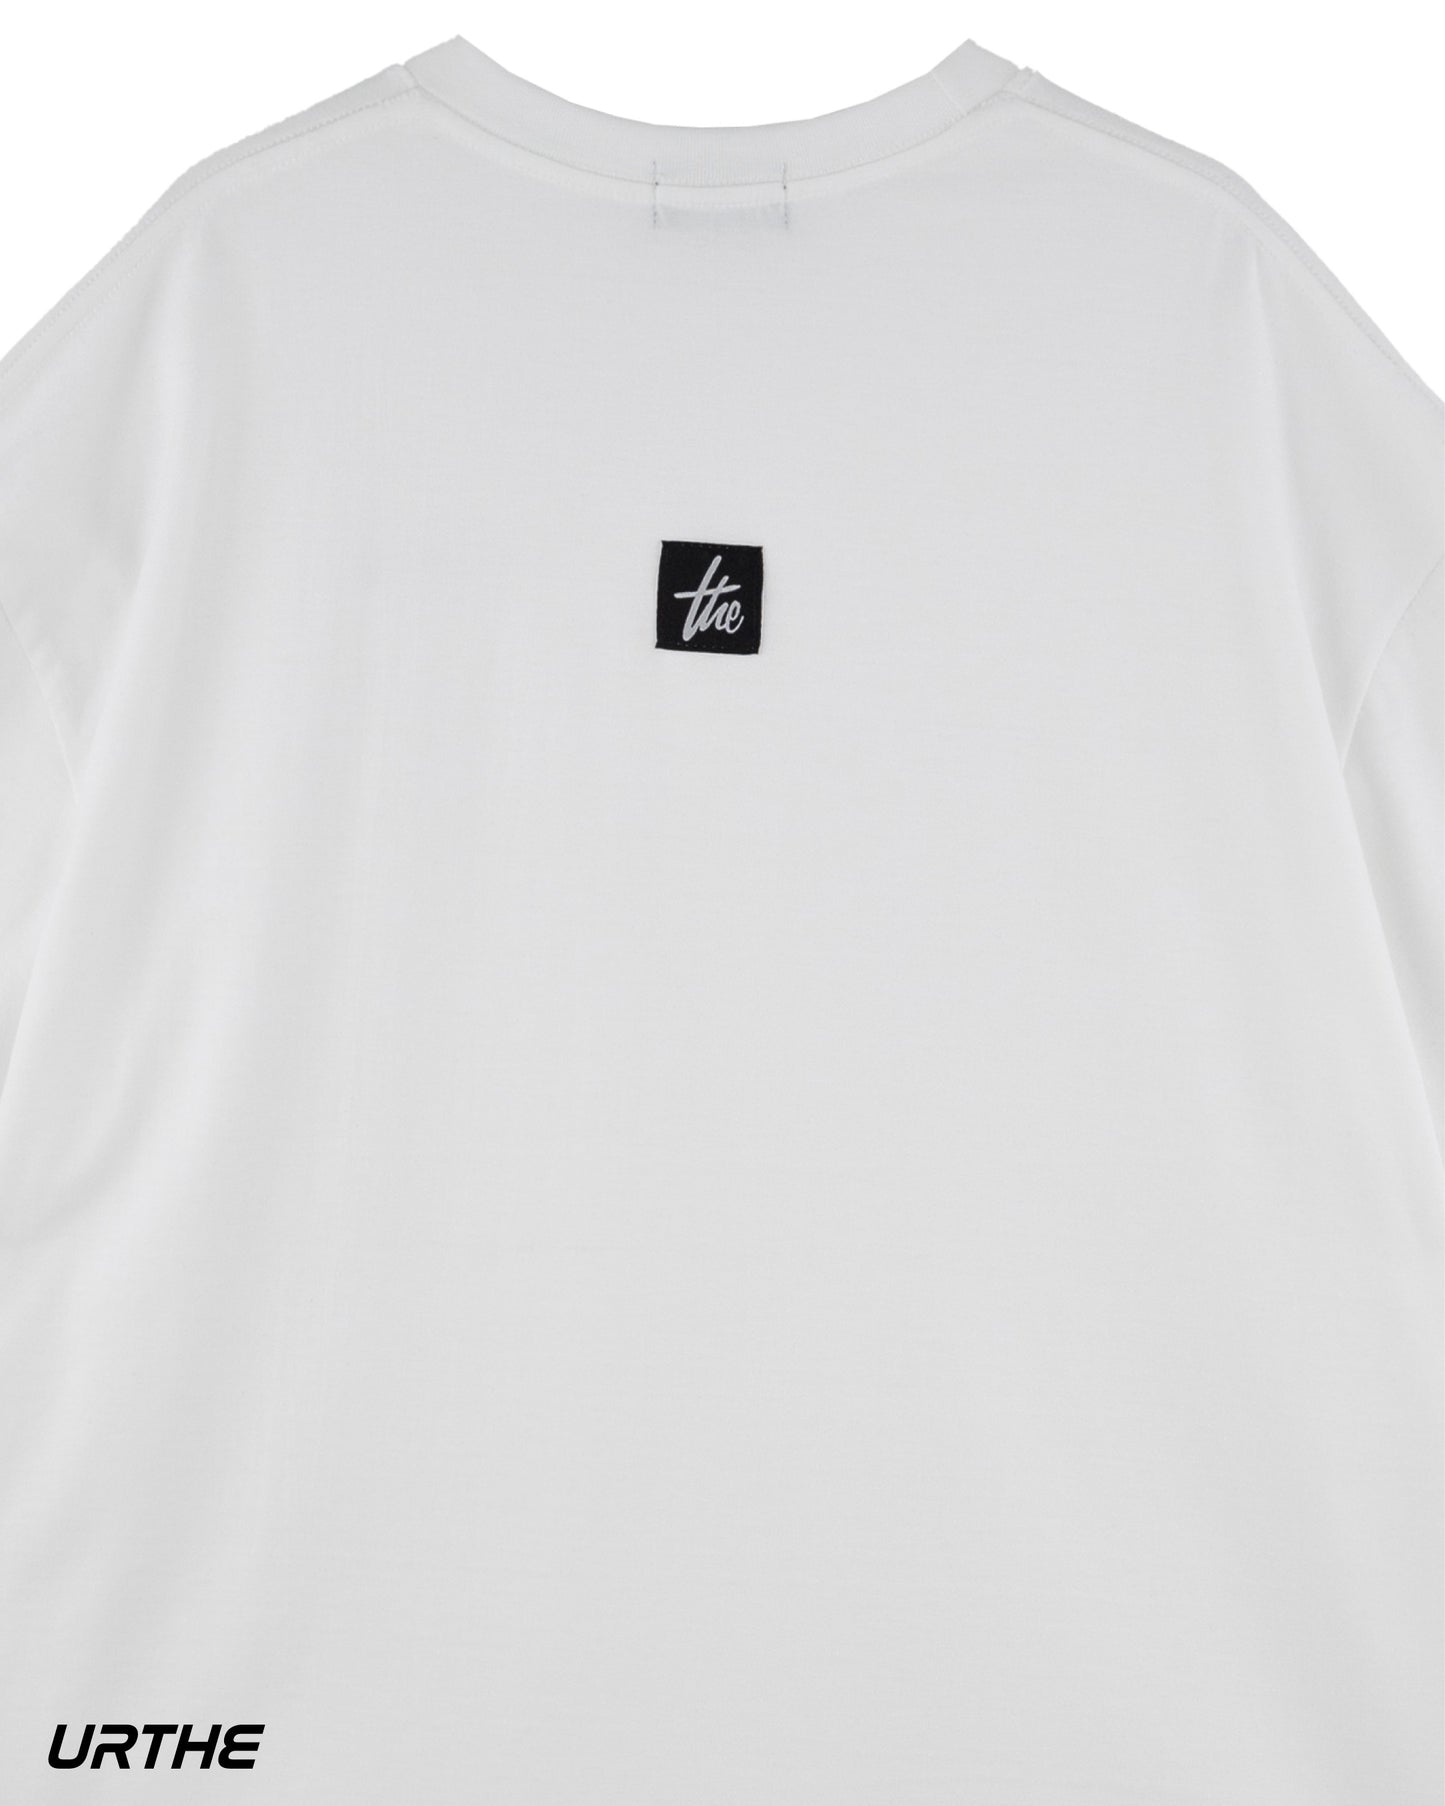 URTHE - เสื้อยืด เเพ็ค 2 ตัว ดำ ขาว สกรีนลาย รุ่น COMBO SET 01